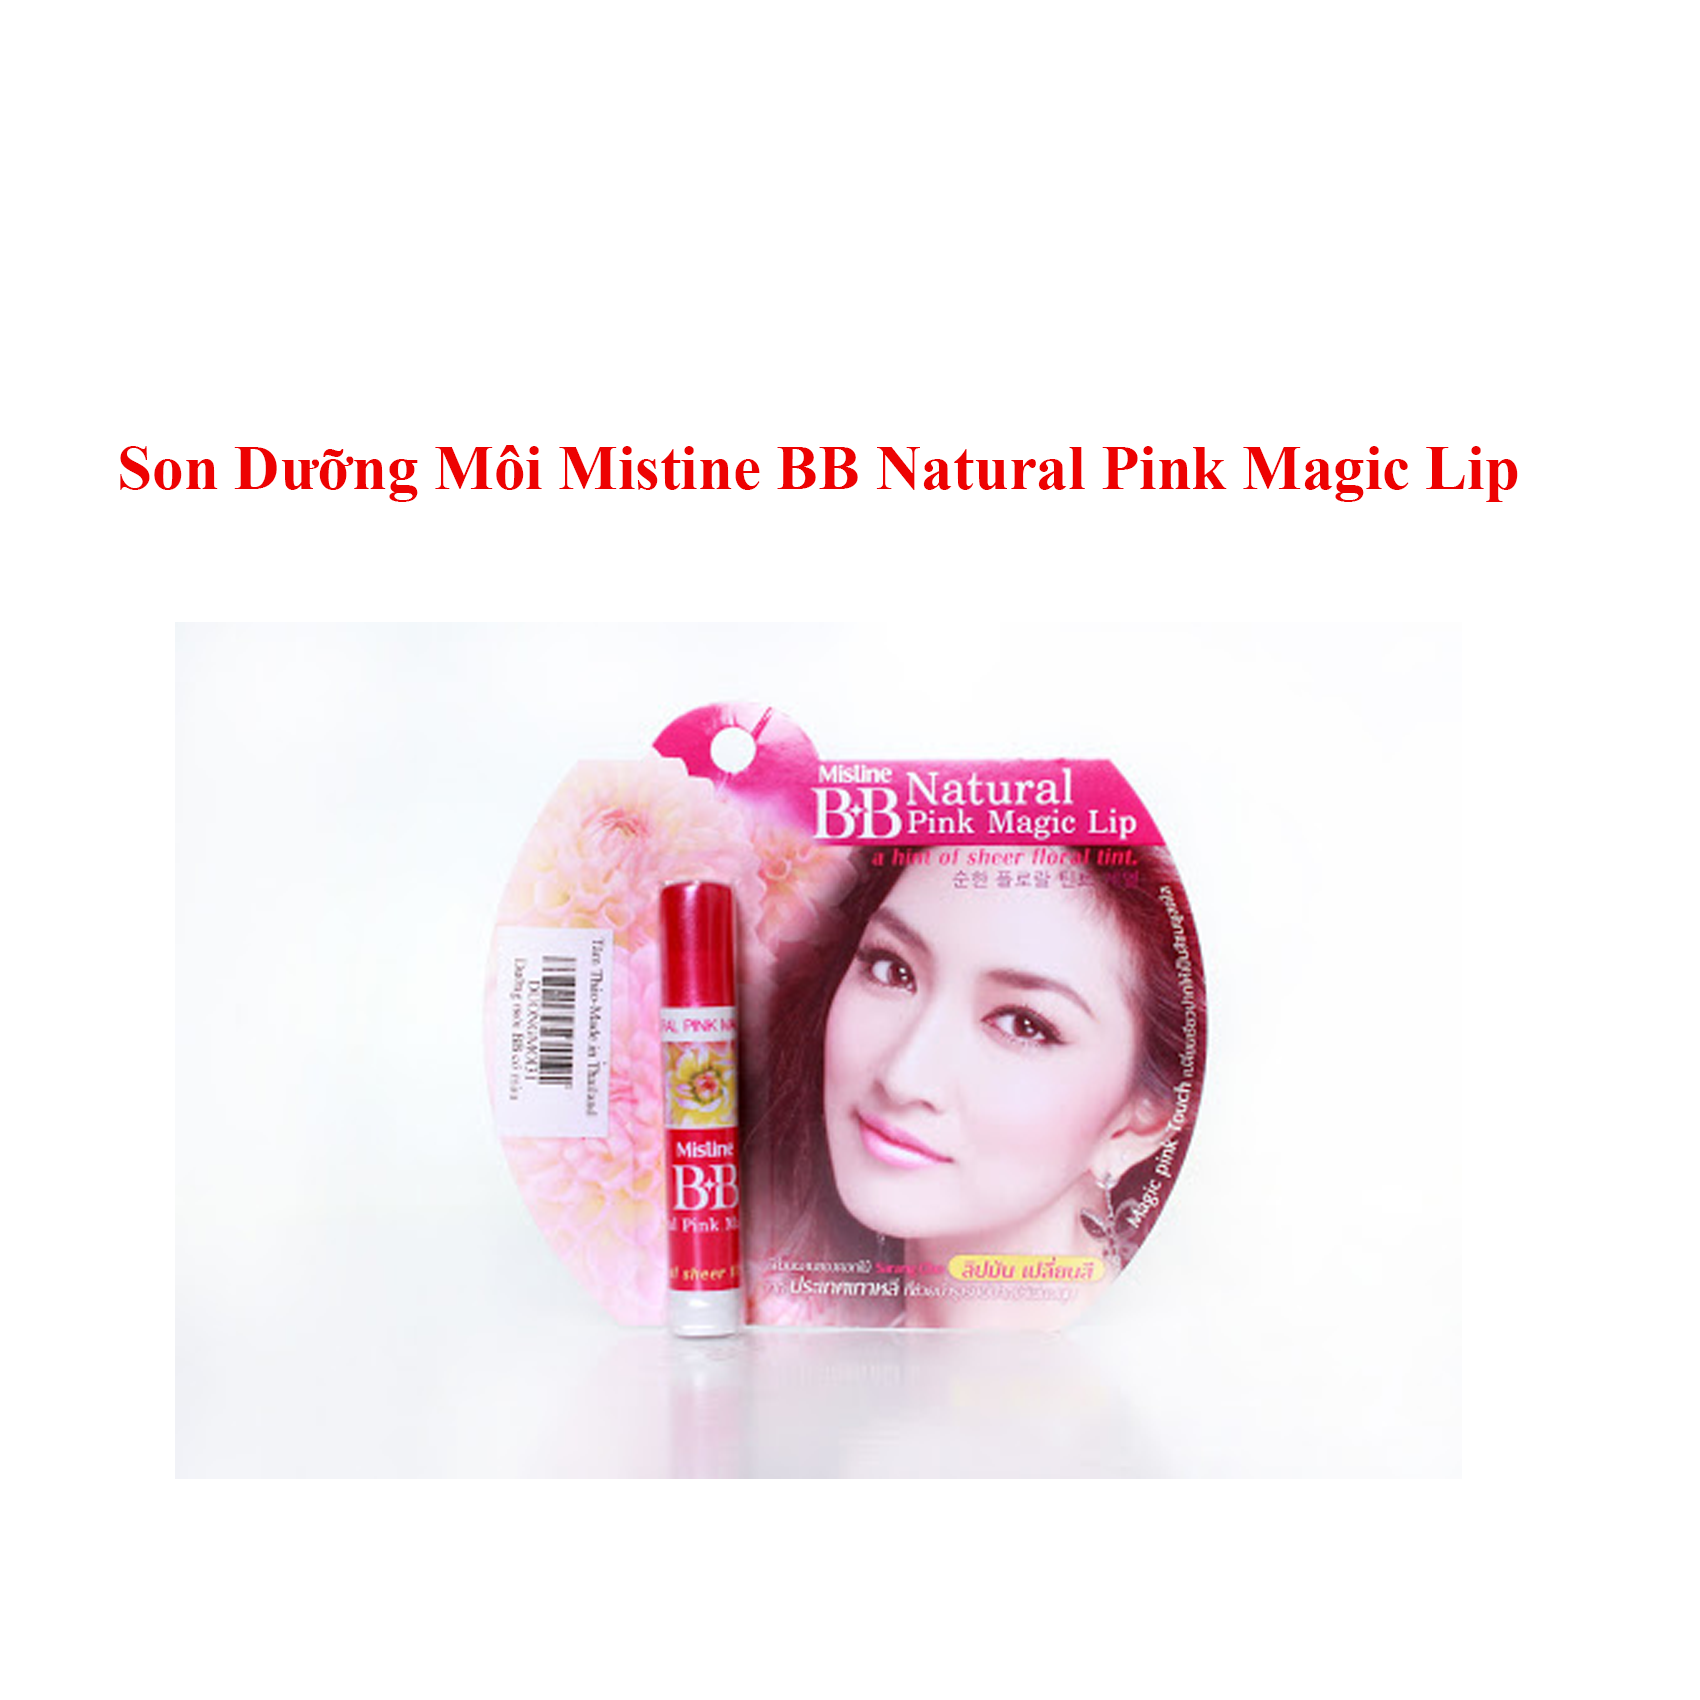 son-moi-son-duong-moi-mistine-bb-natural-pink-magic-lip-thai-lan-751